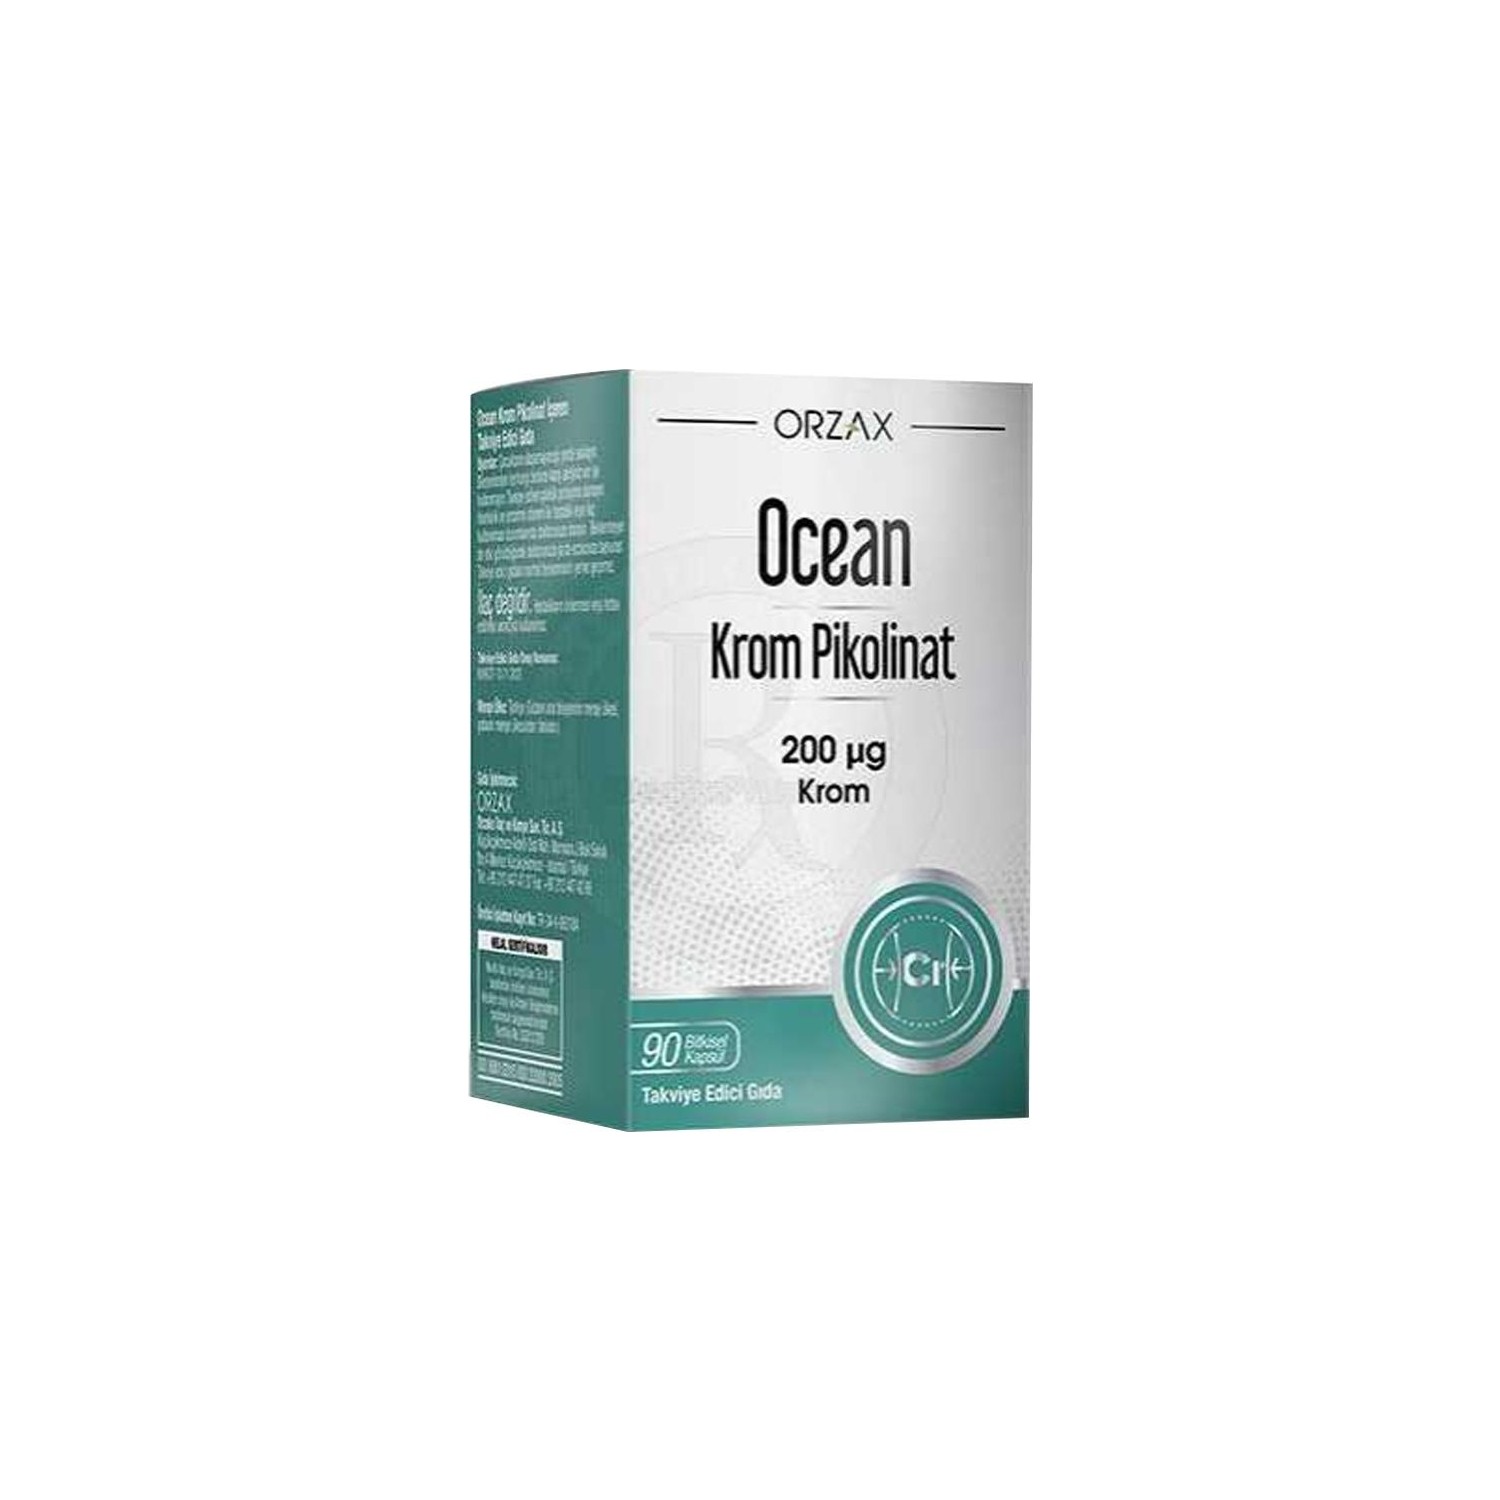 Пиколинат хрома Orzax Ocean, 90 капсул бады тонизирующие и общеукрепляющие mychoice nutrition добавка zinc picolinate пиколинат цинка